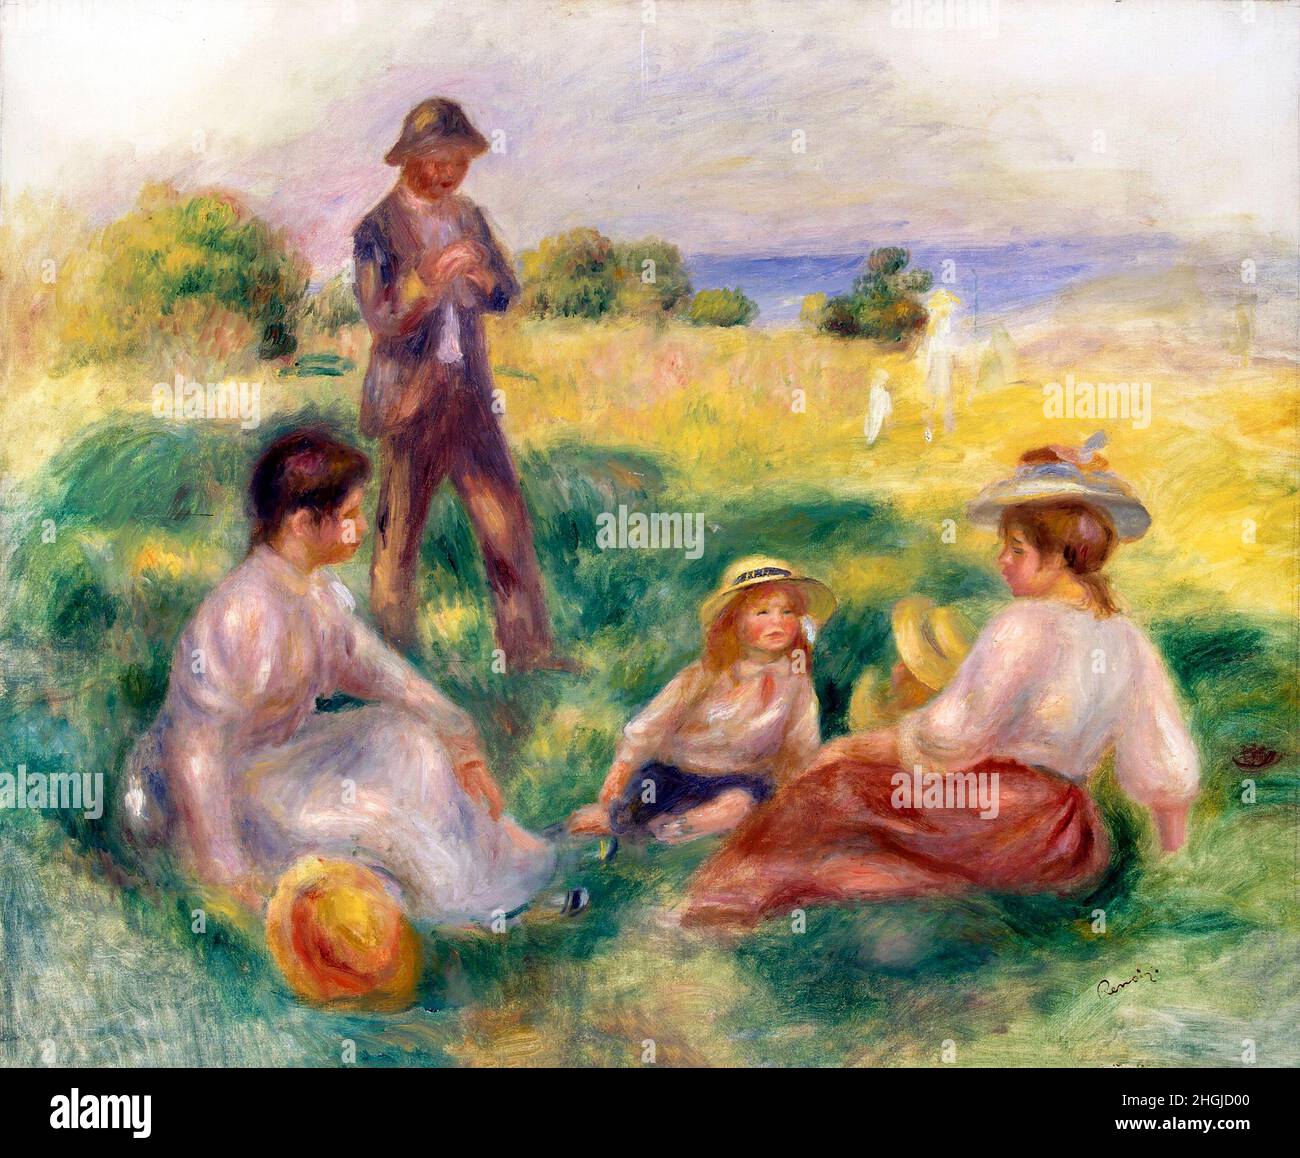 Fête dans le pays à Berneval par Pierre Auguste Renoir (1841-1919), huile sur toile, 1898 Banque D'Images